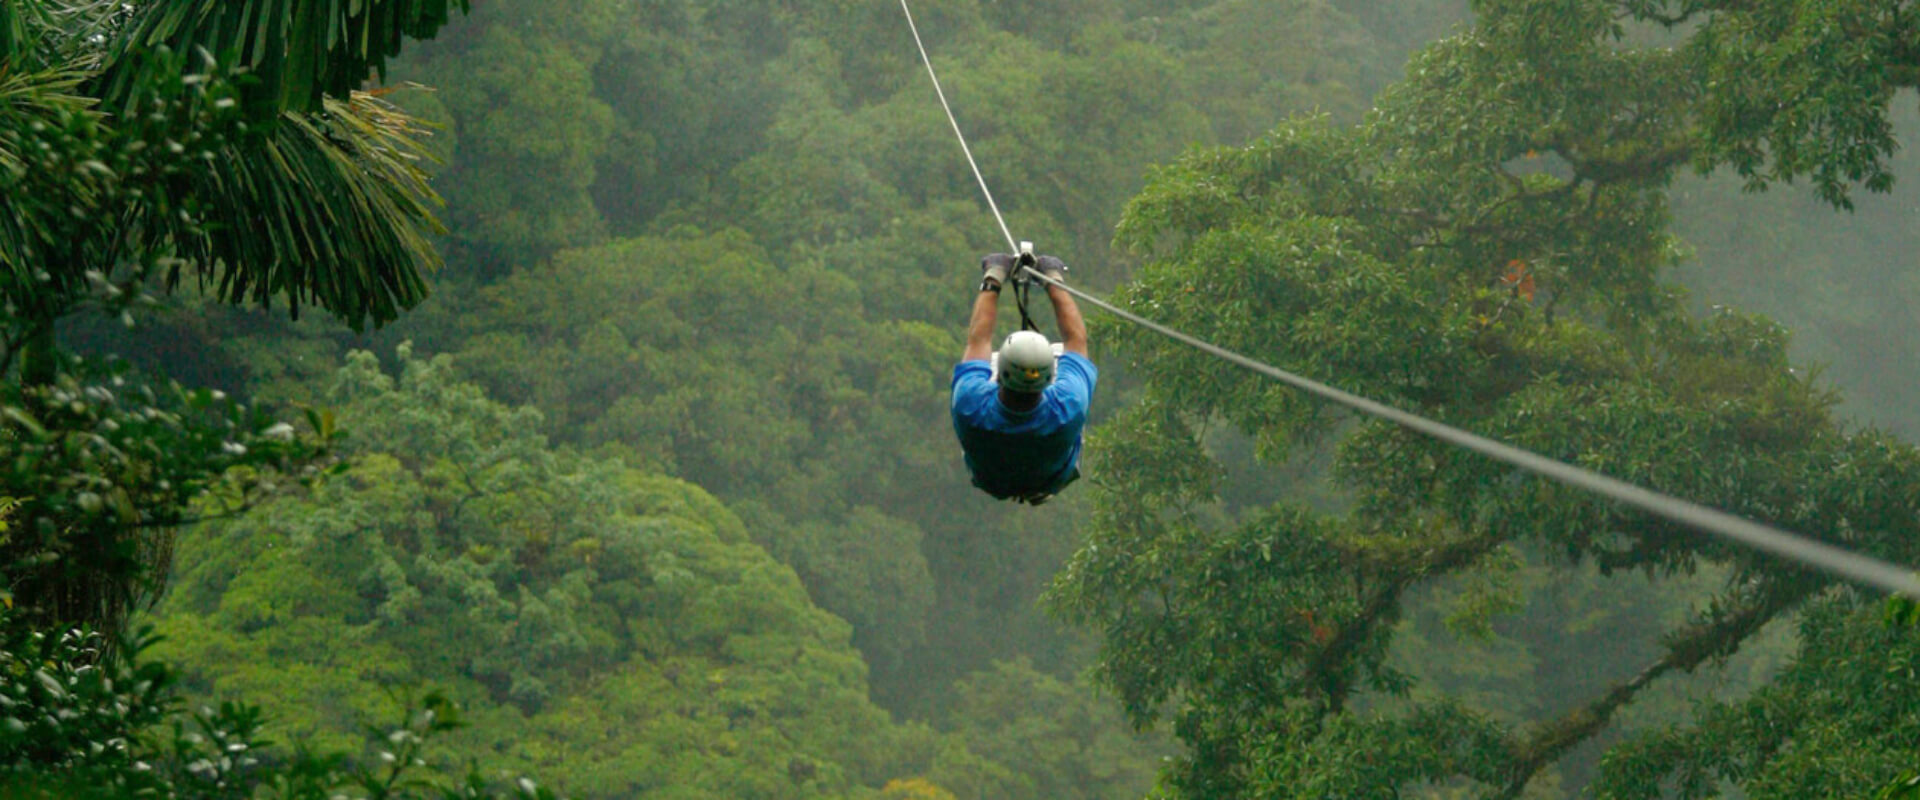 Sky Tram y Sky Trek en Monteverde | Costa Rica Jade Tours